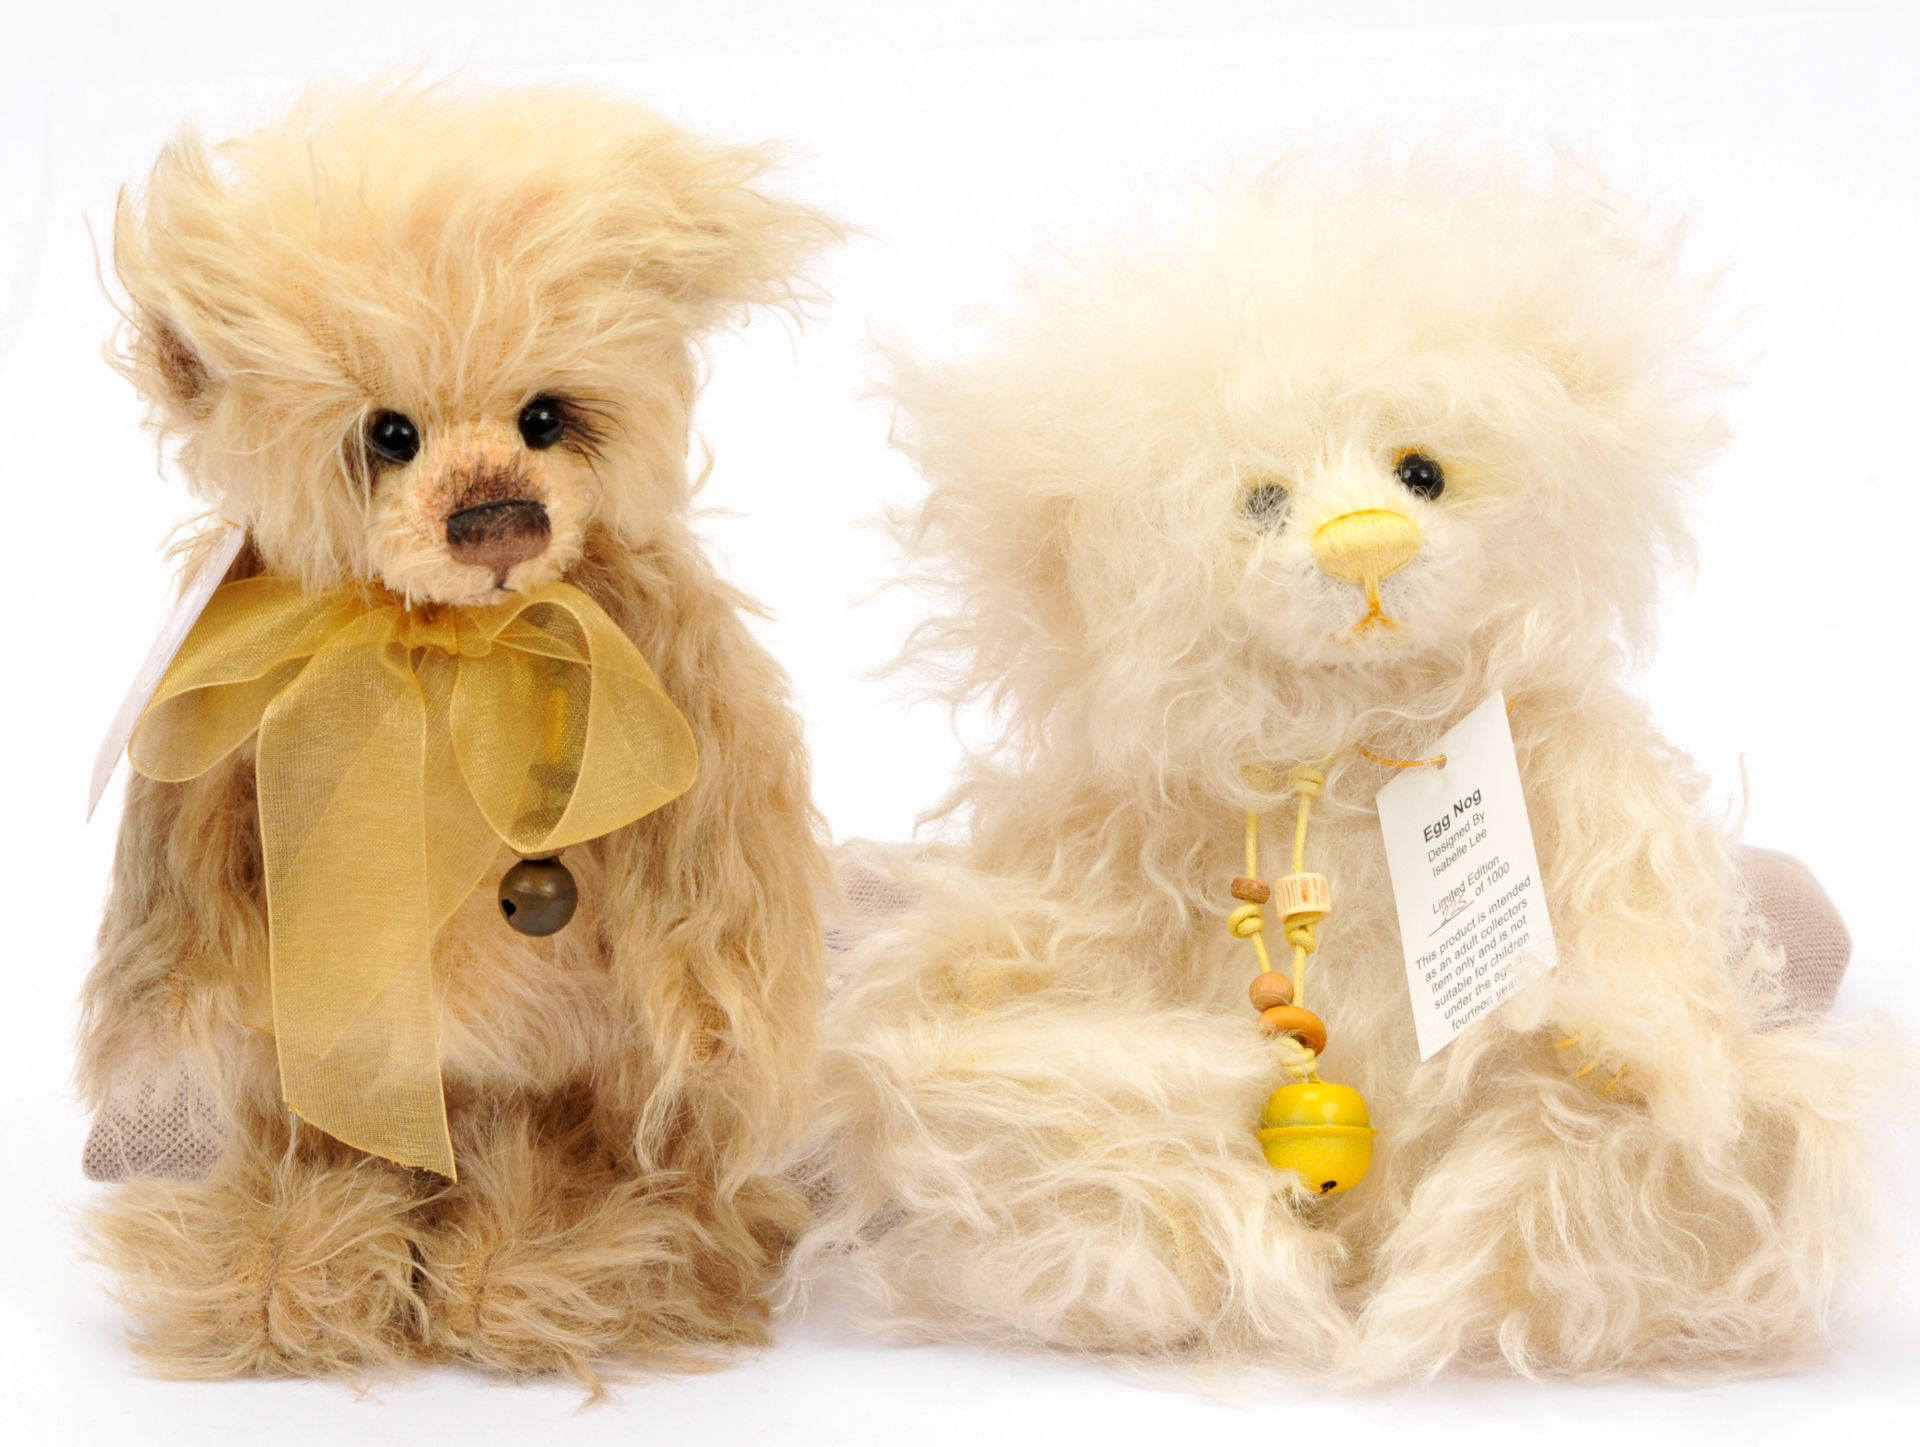 Charlie Bears Minimo Collection teddy bear pair